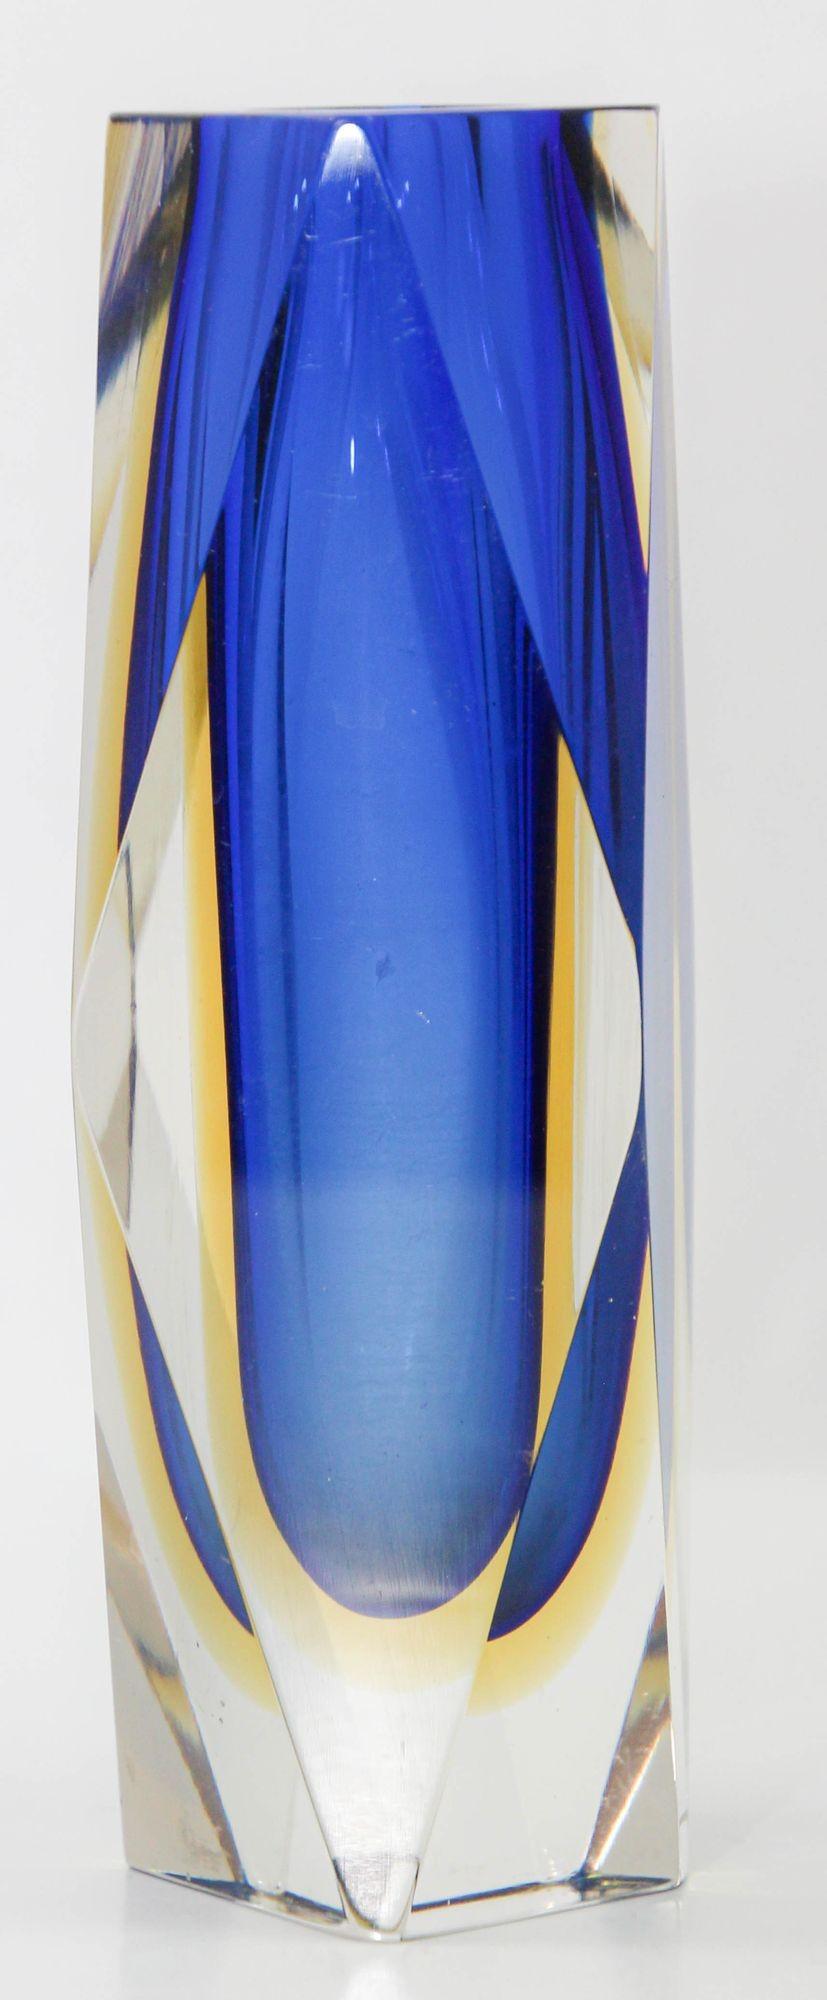 Die atemberaubende Vintage-Vase aus Murano-Glas von Sommerso, entworfen von Flavio Poli und gefertigt von Alessandro Mandruzzato, besticht durch eine Kombination aus blauen, gelben und klaren Farbtönen.
Dieses italienische Meisterwerk aus den 1960er